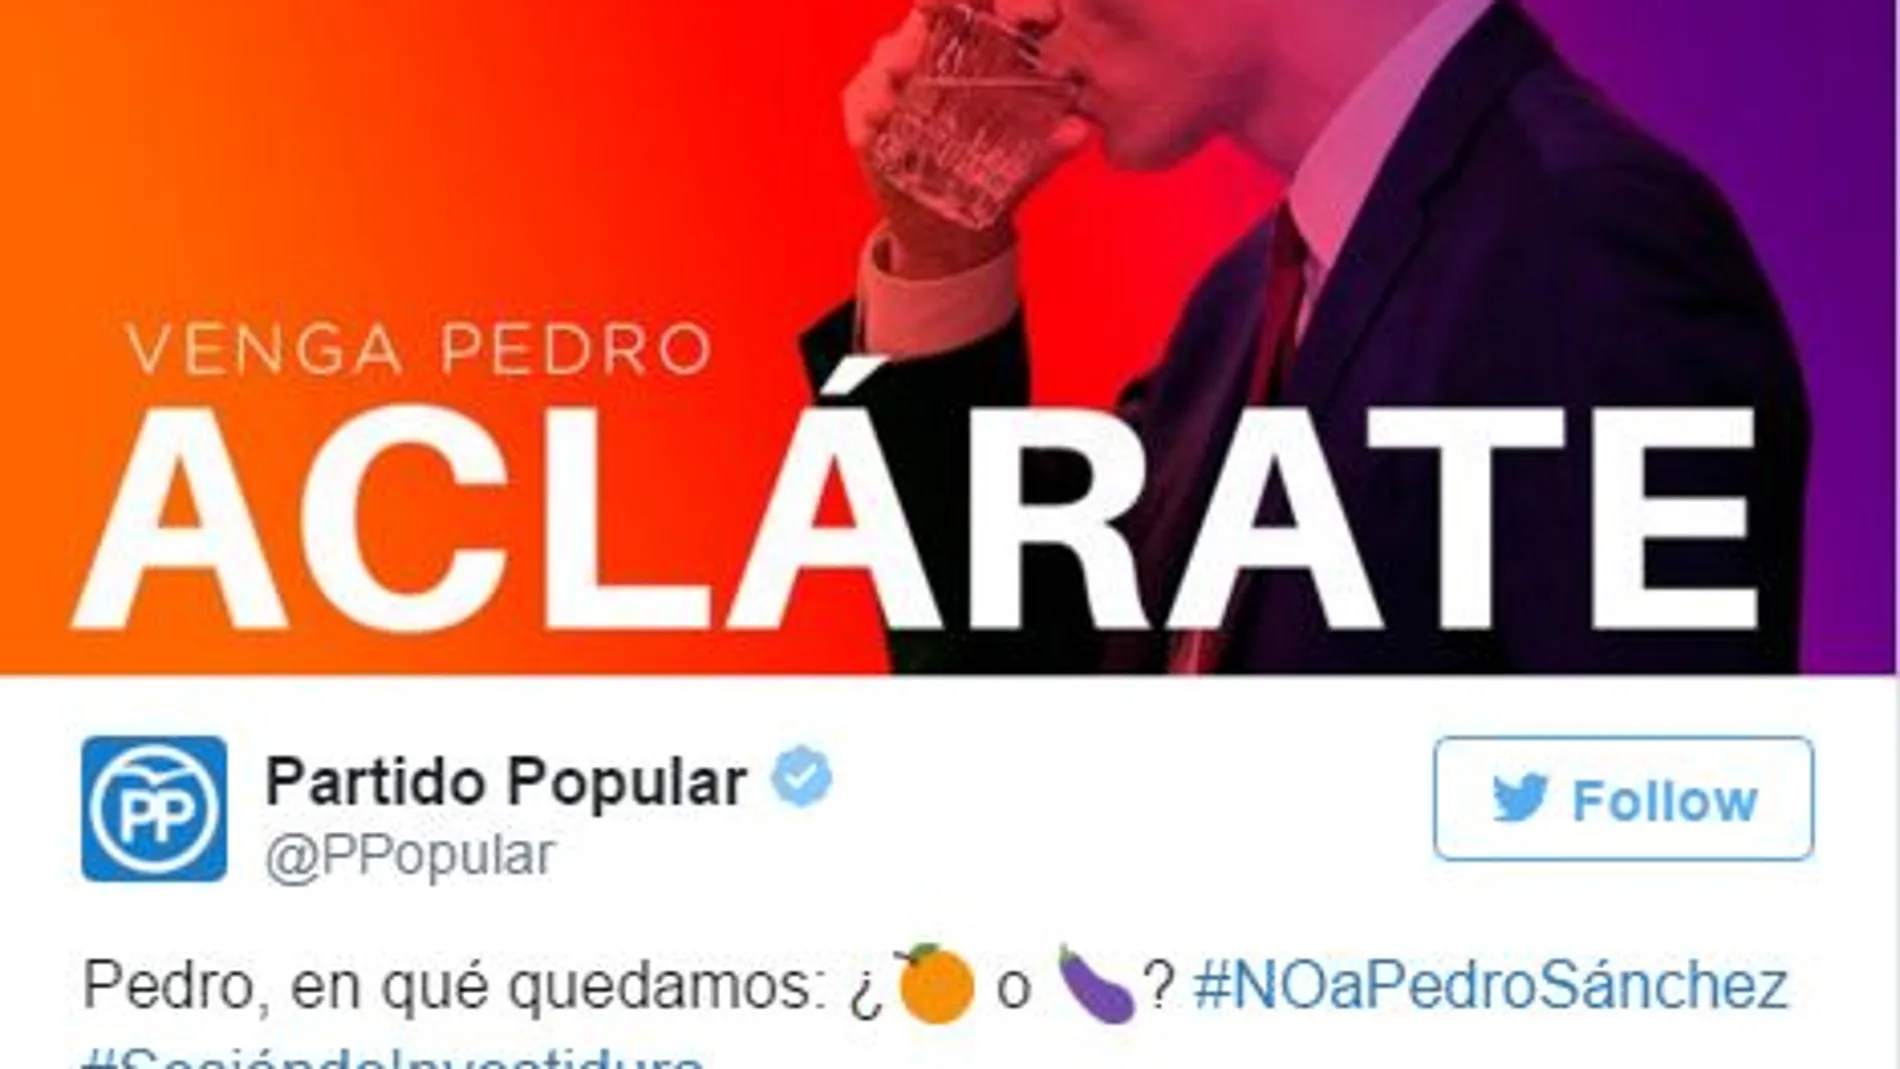 «Venga Pedro, aclárate» marca el debate en Twitter